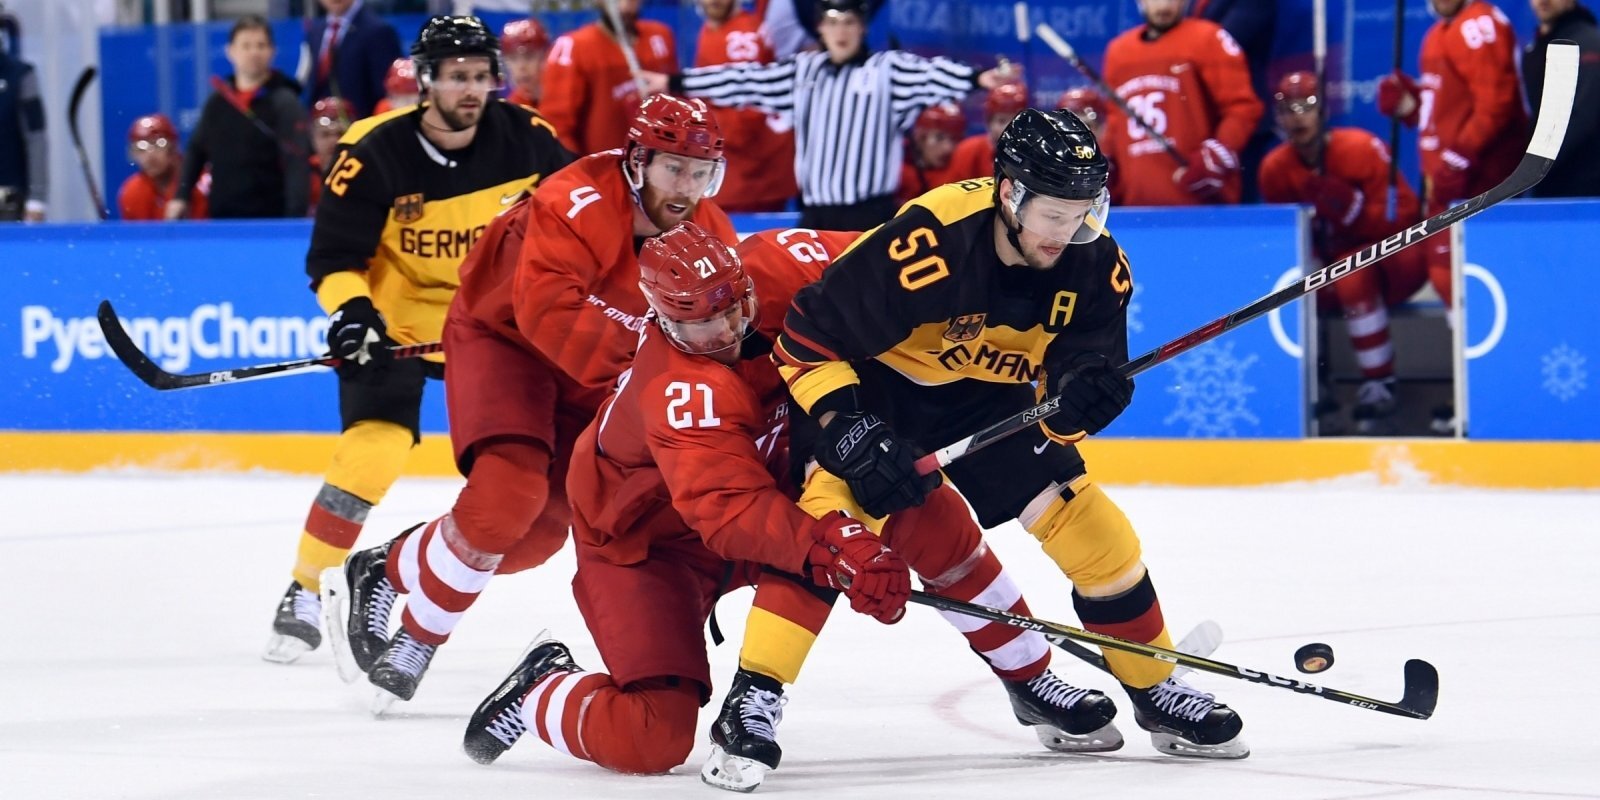 Olimpiskais hokejs Pekinā: striktais Covid-19 protokols varētu aizbiedēt ne tikai NHL